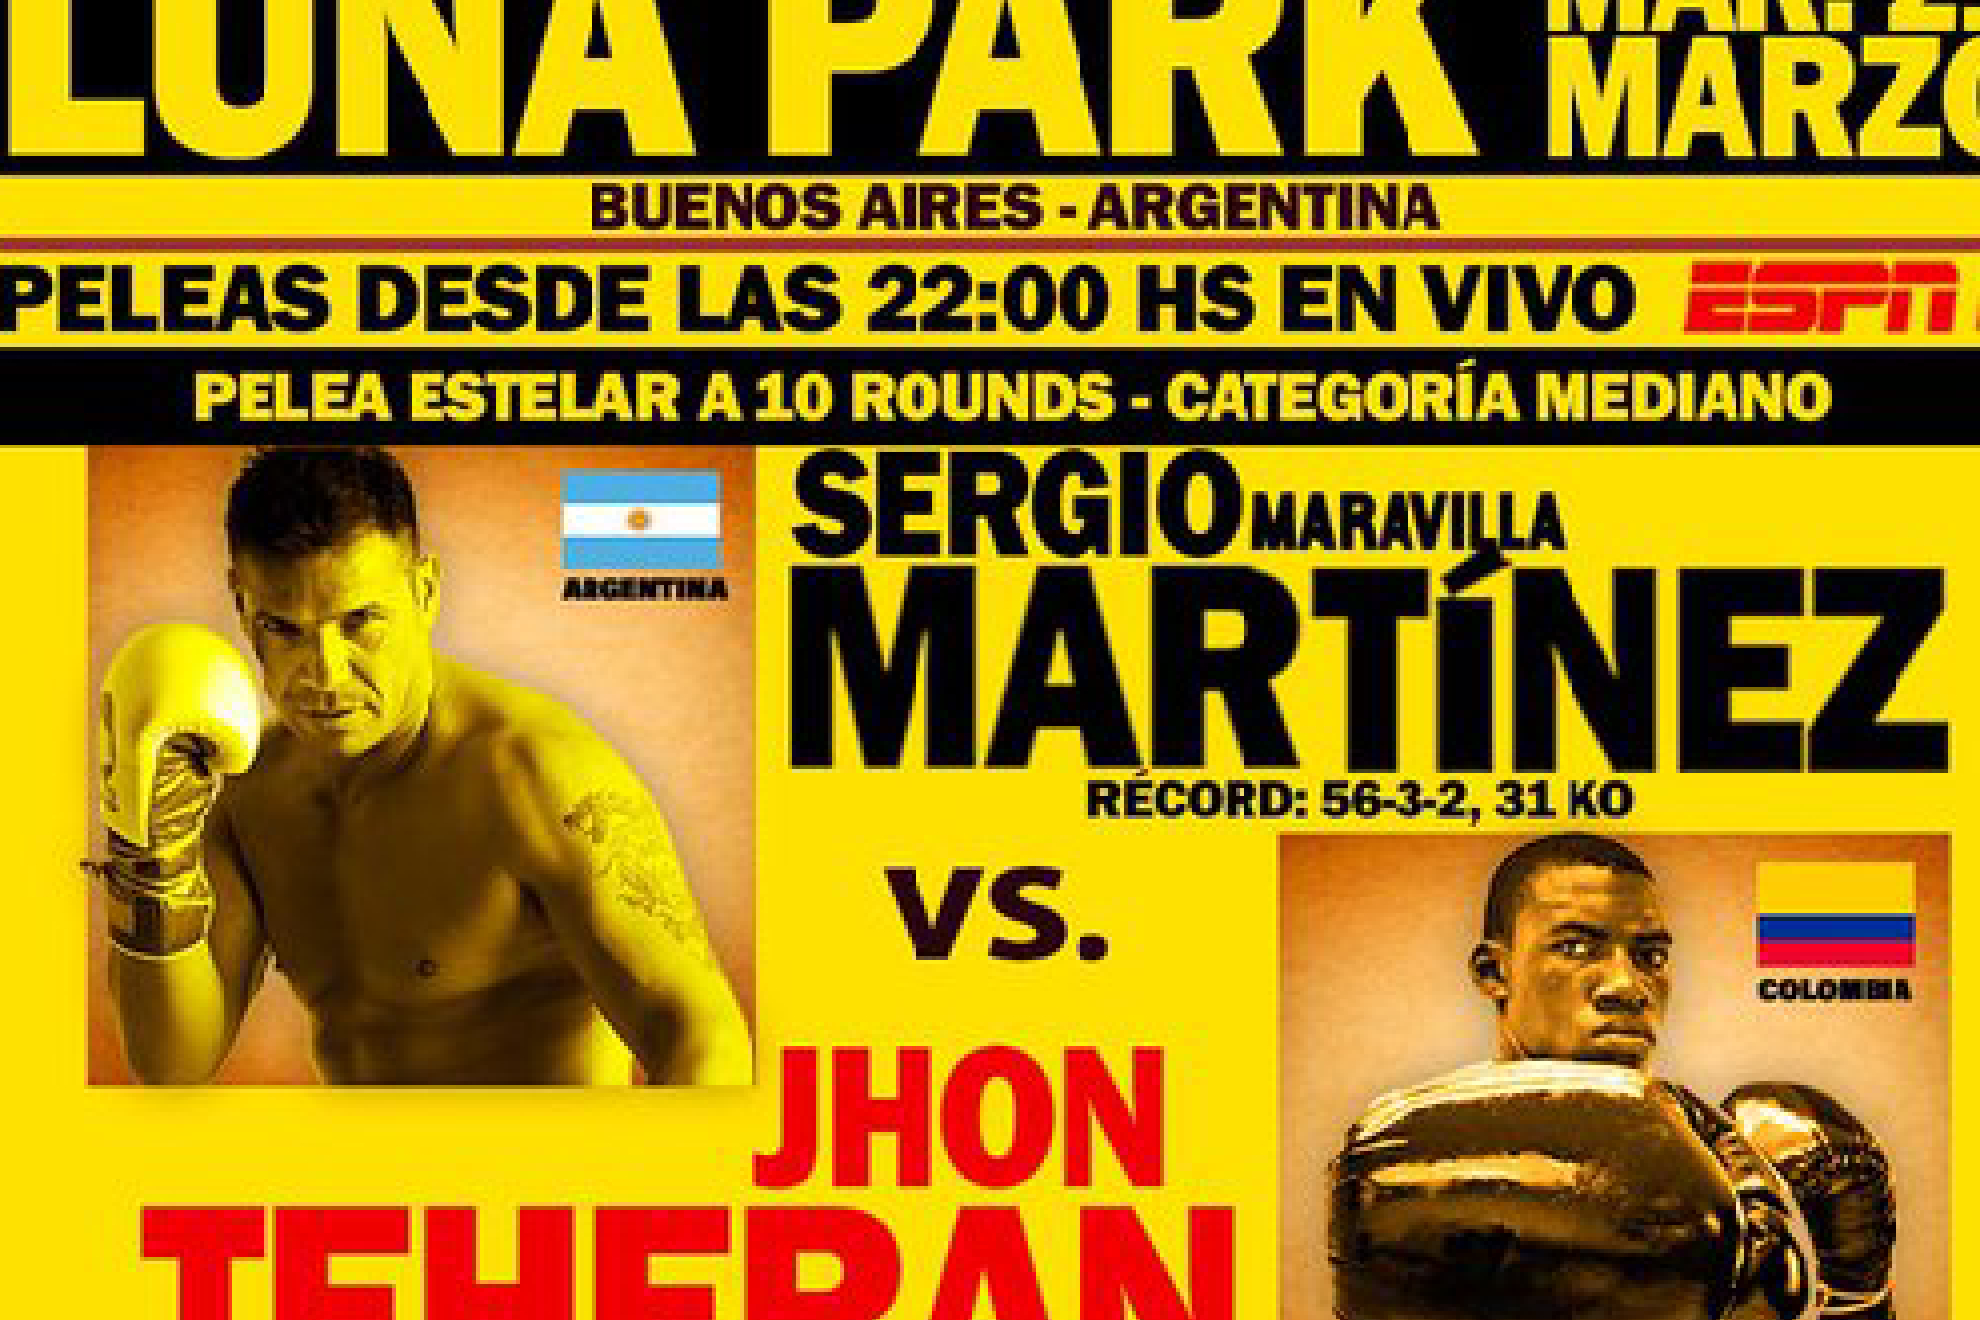 El argentino Sergio Maravilla Martínez contra el colombiano Jhon Teherán en el Luna Park